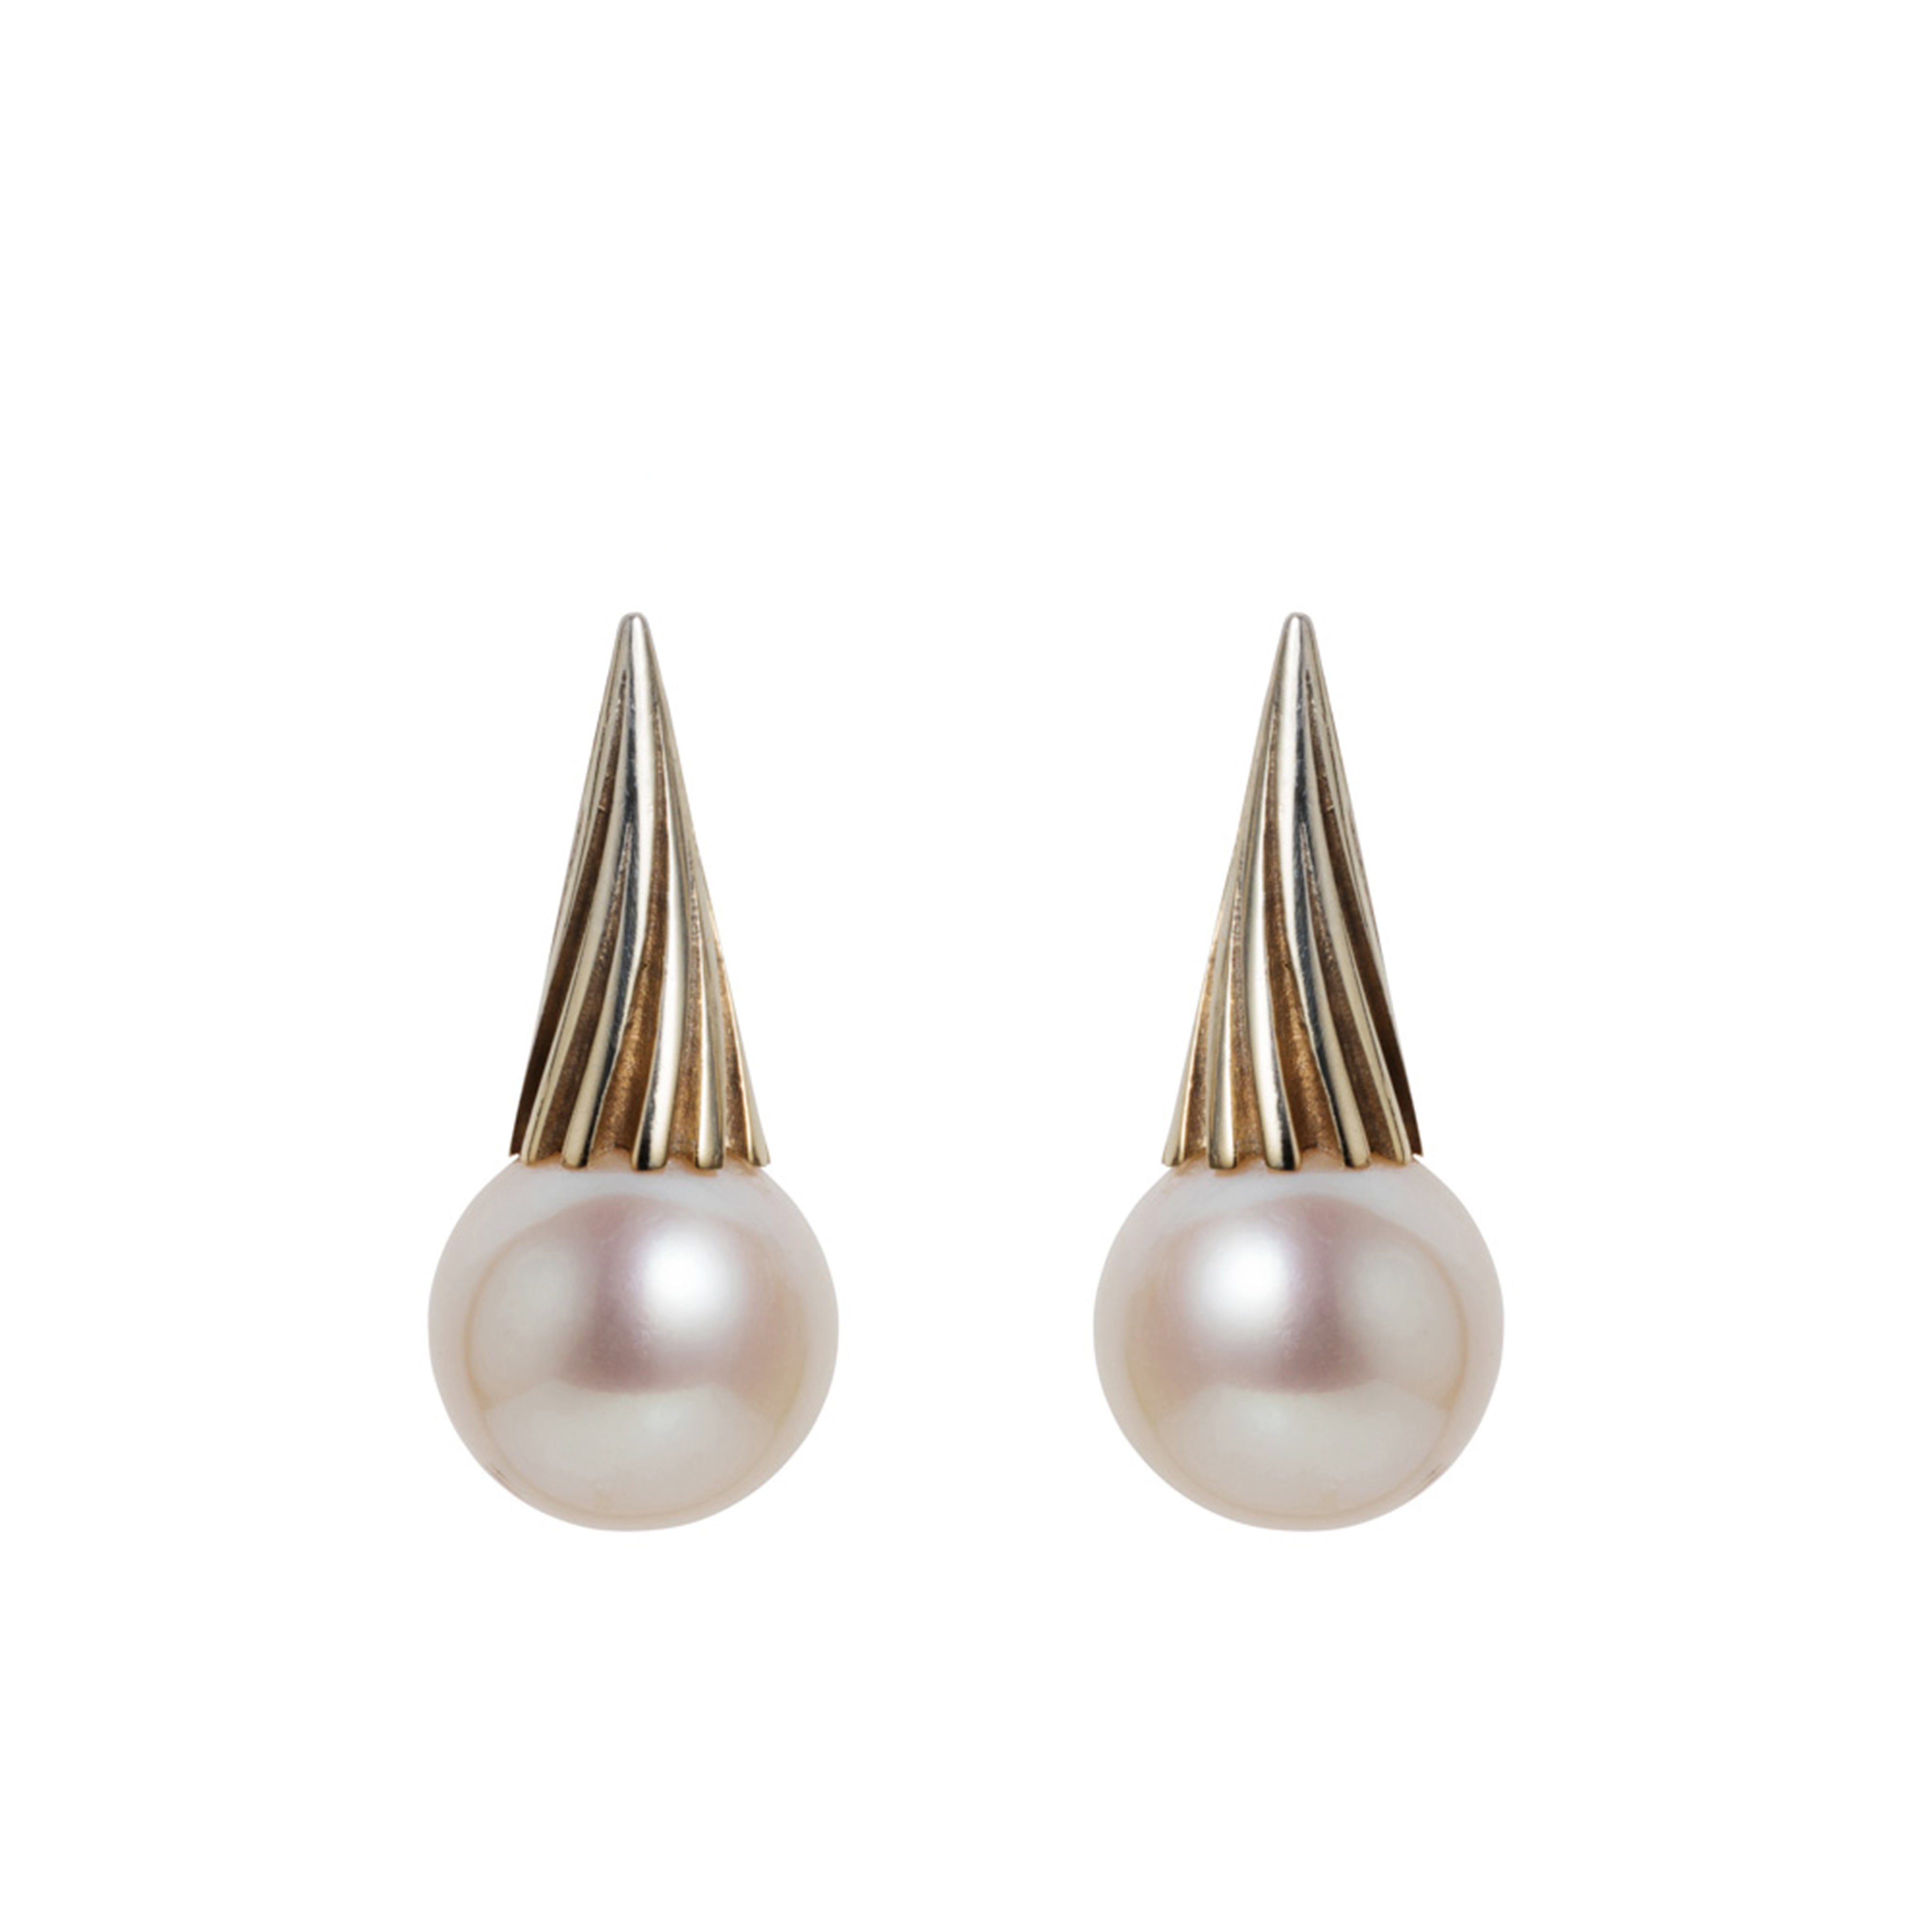 Cit Twist White Pearl Earrings